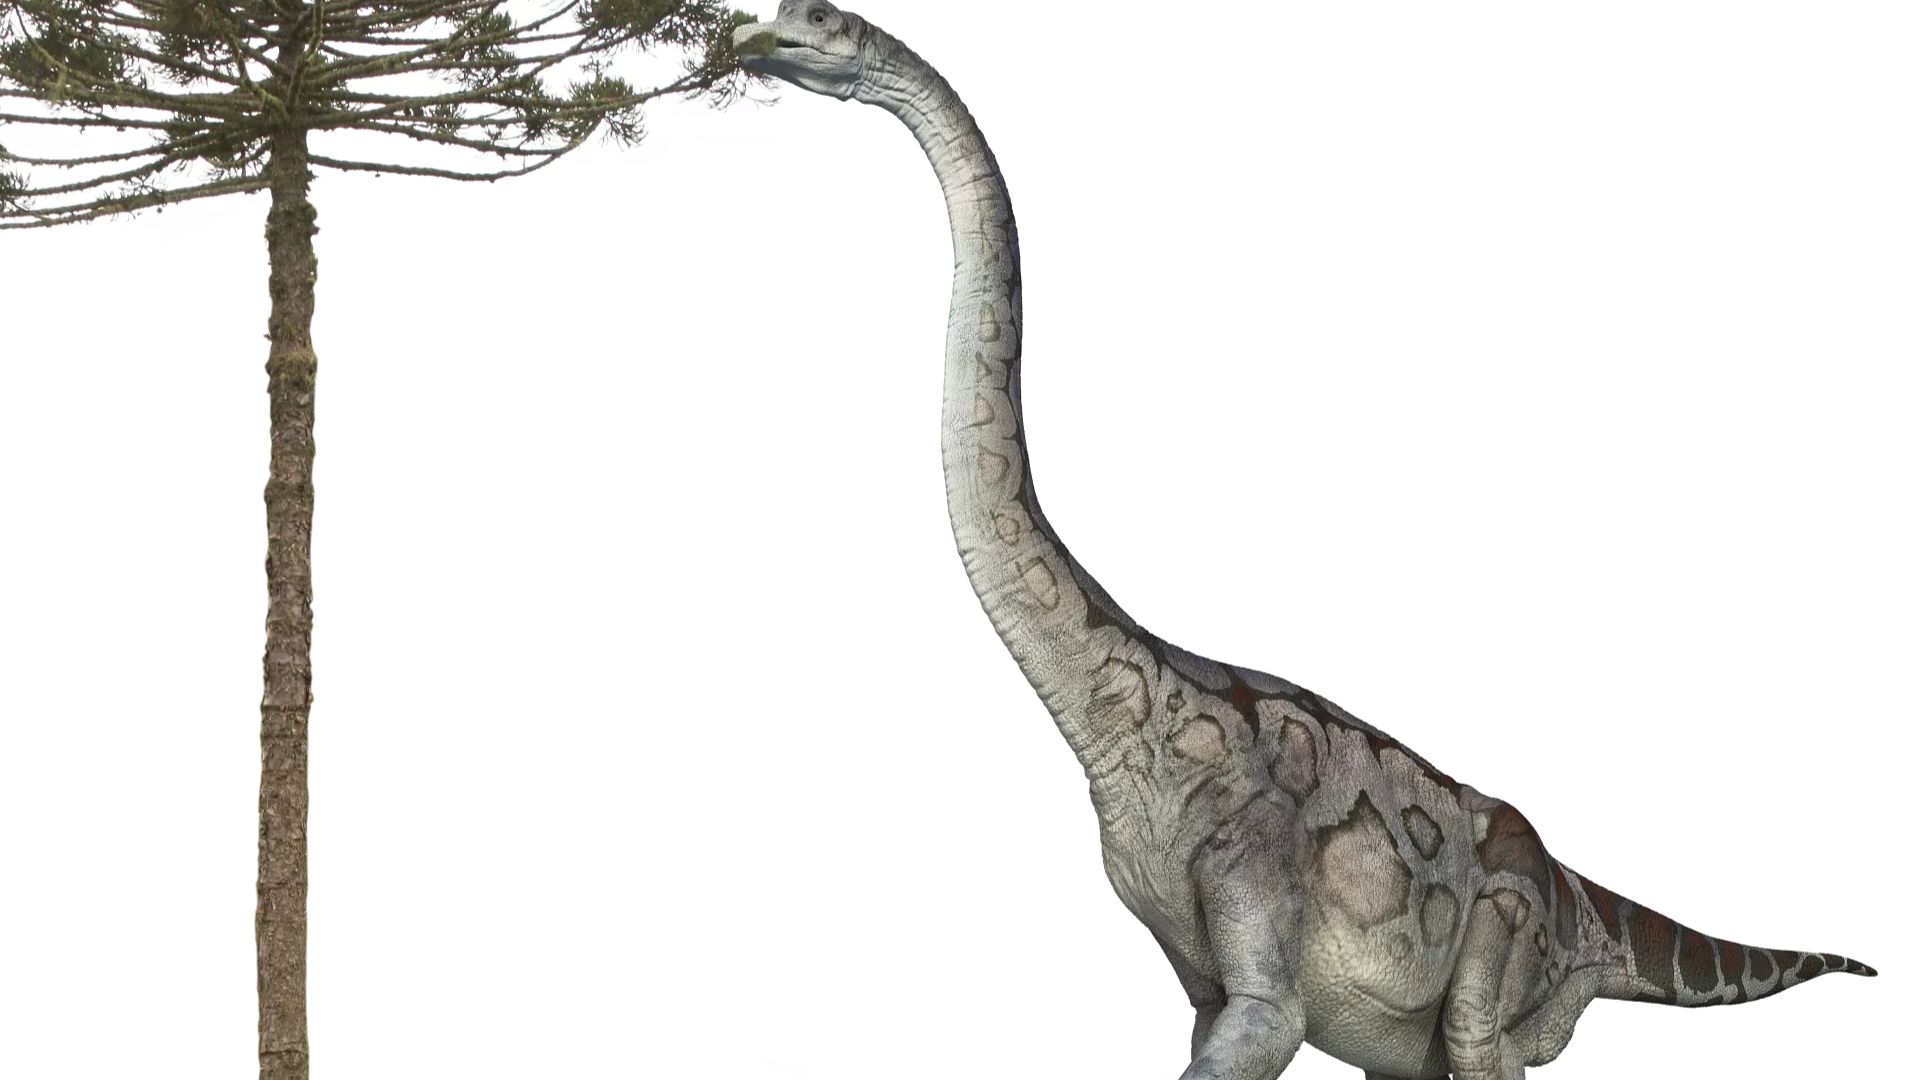 Brachiosaurus Eating From Tree